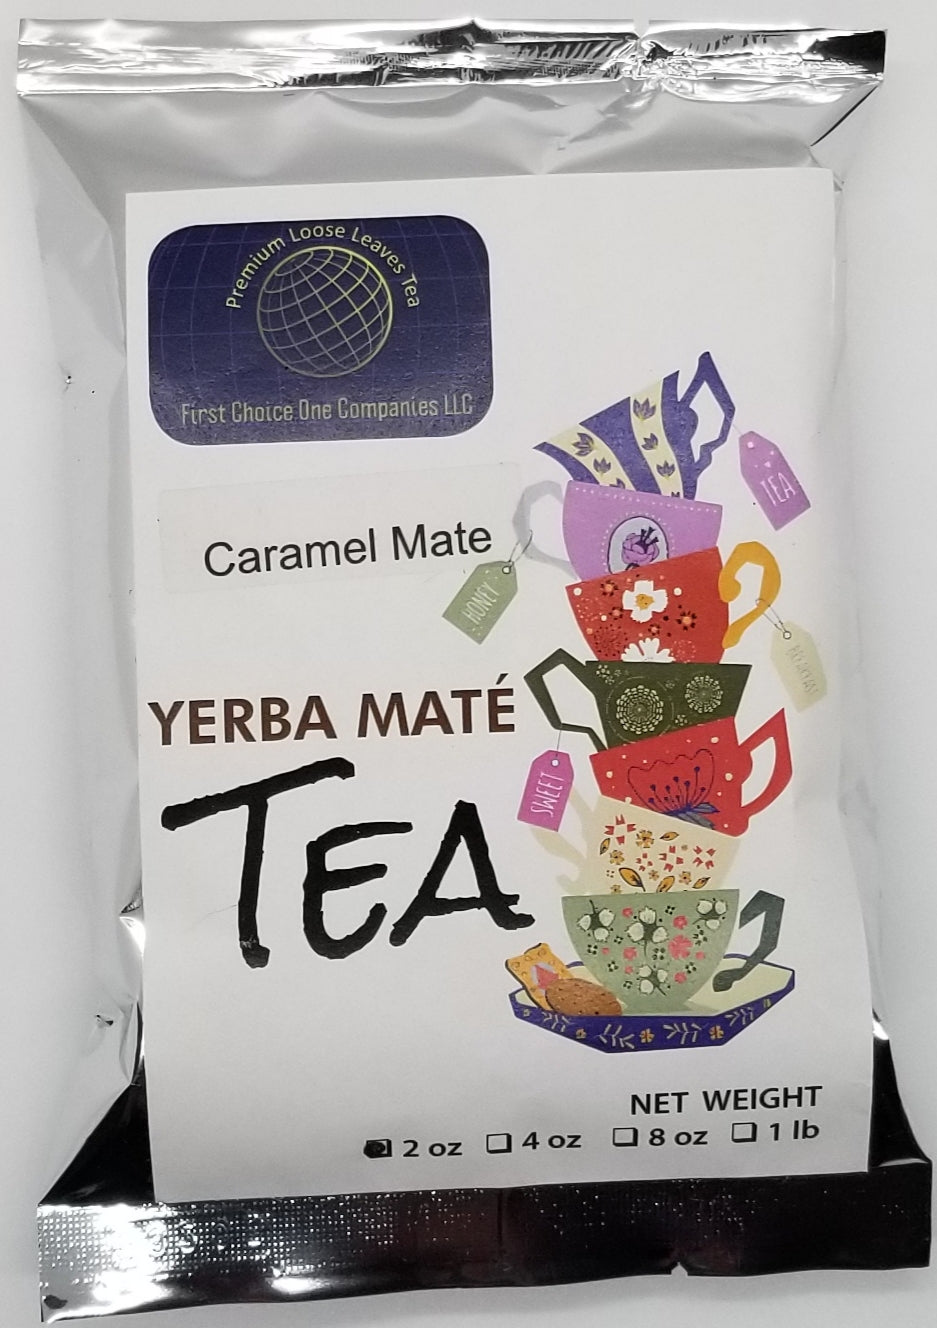 Premium Loose Leaves Teas  (Yerba Mate)